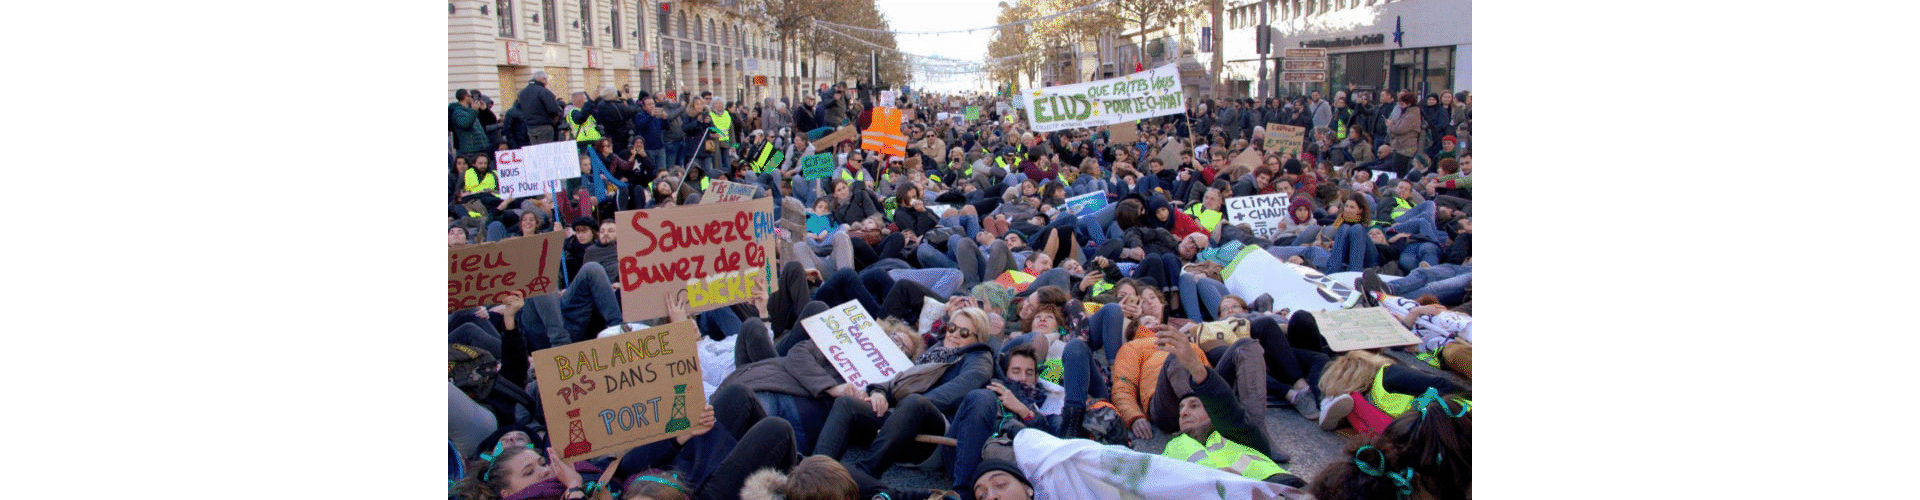 Marche pour le climat à Marseille, le 8 décembre 2018 - 